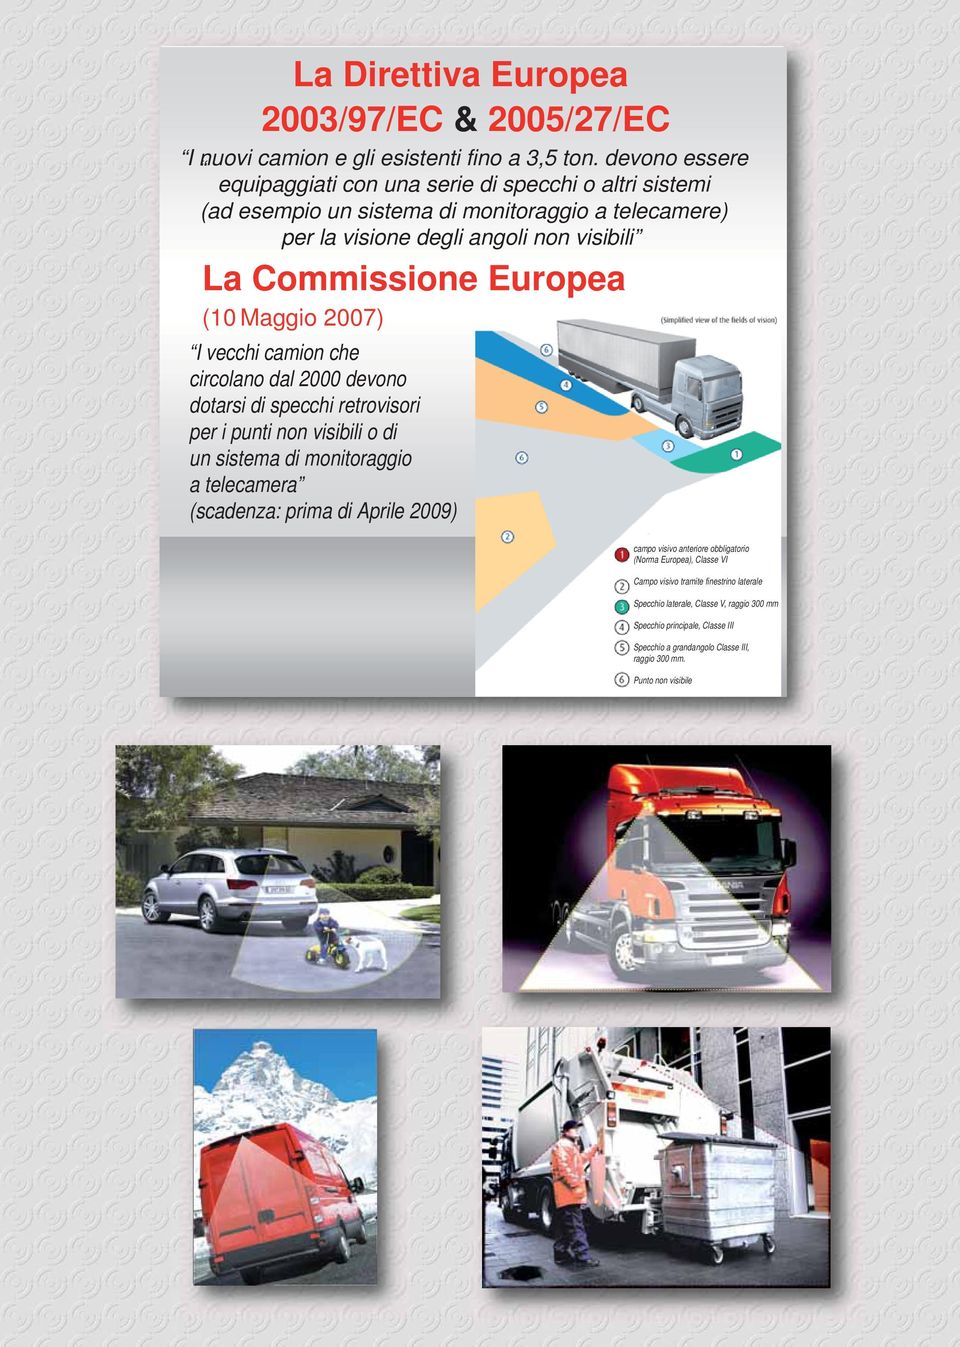 Europea (10 Maggio 2007) I vecchi camion che circolano dal 2000 devono dotarsi di specchi retrovisori per i punti non visibili o di un sistema di monitoraggio a telecamera